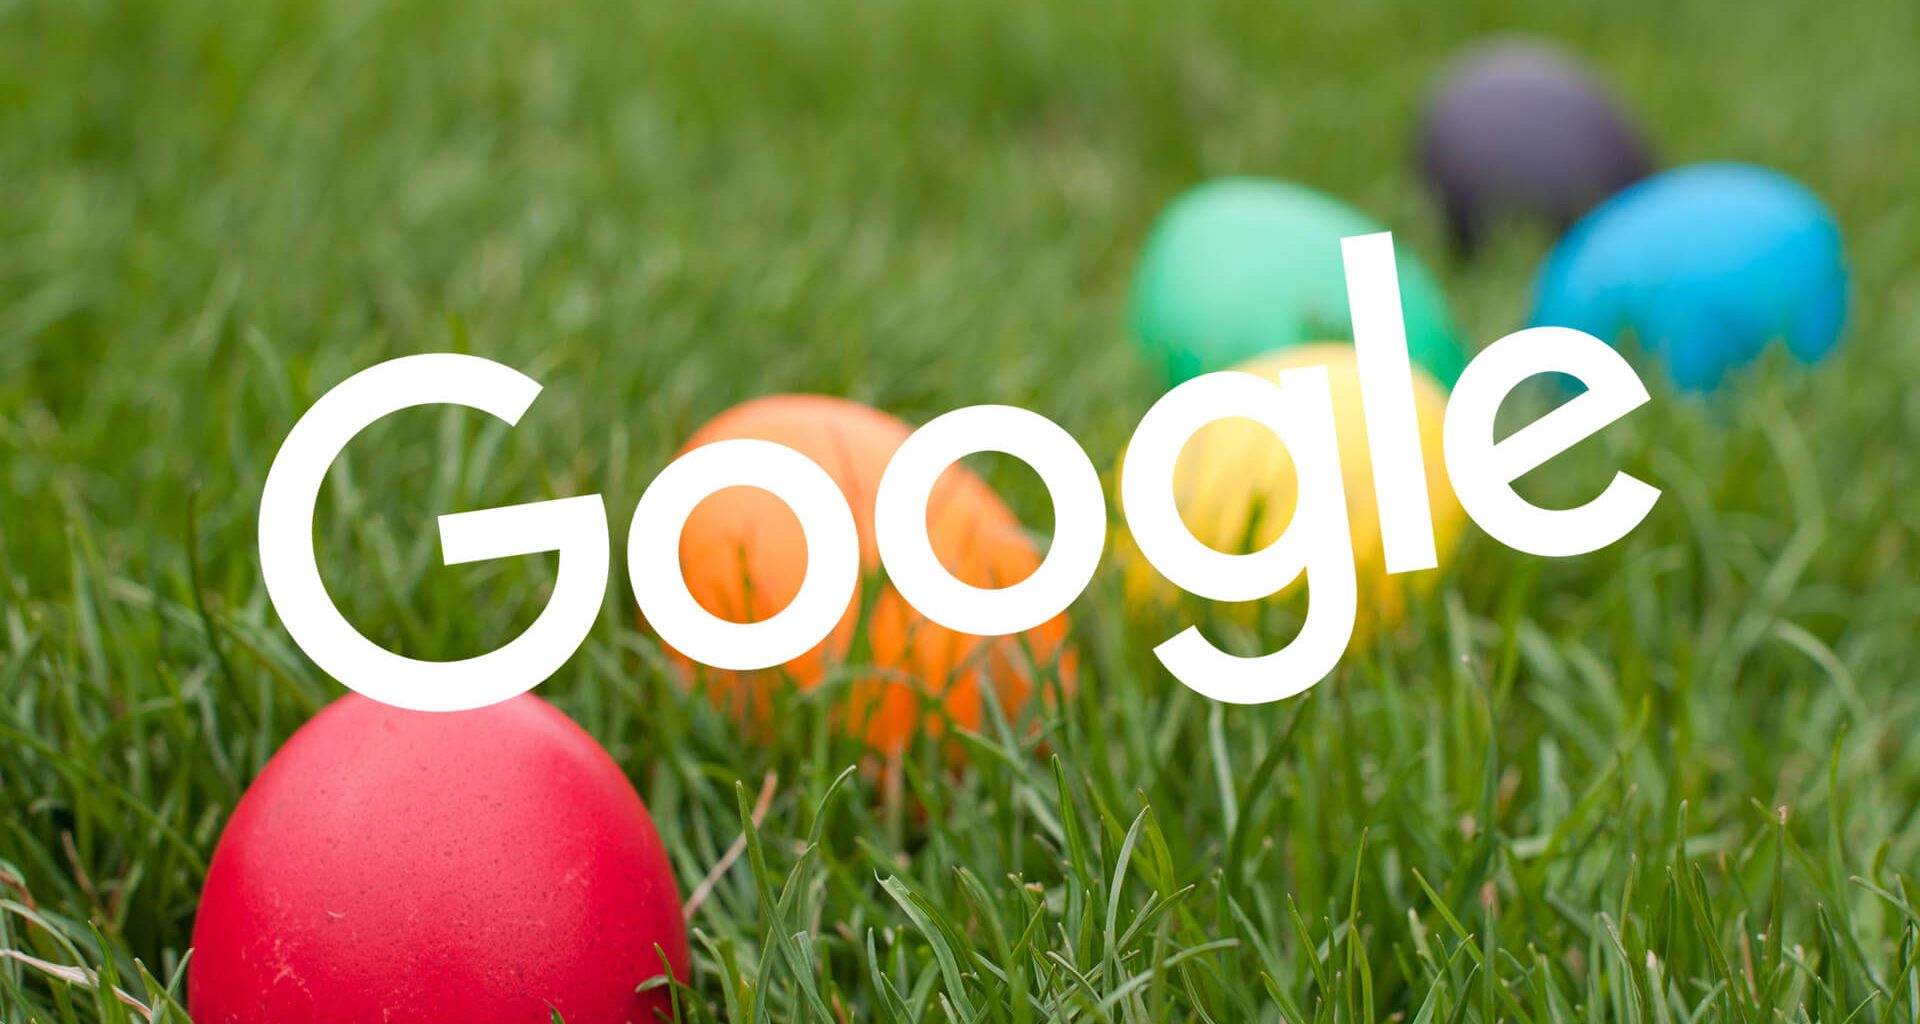 Os 10 melhores easter eggs do google. Os easter eggs do google escondem surpresas divertidas nos resultados de pesquisa que vão desde curiosidades até games